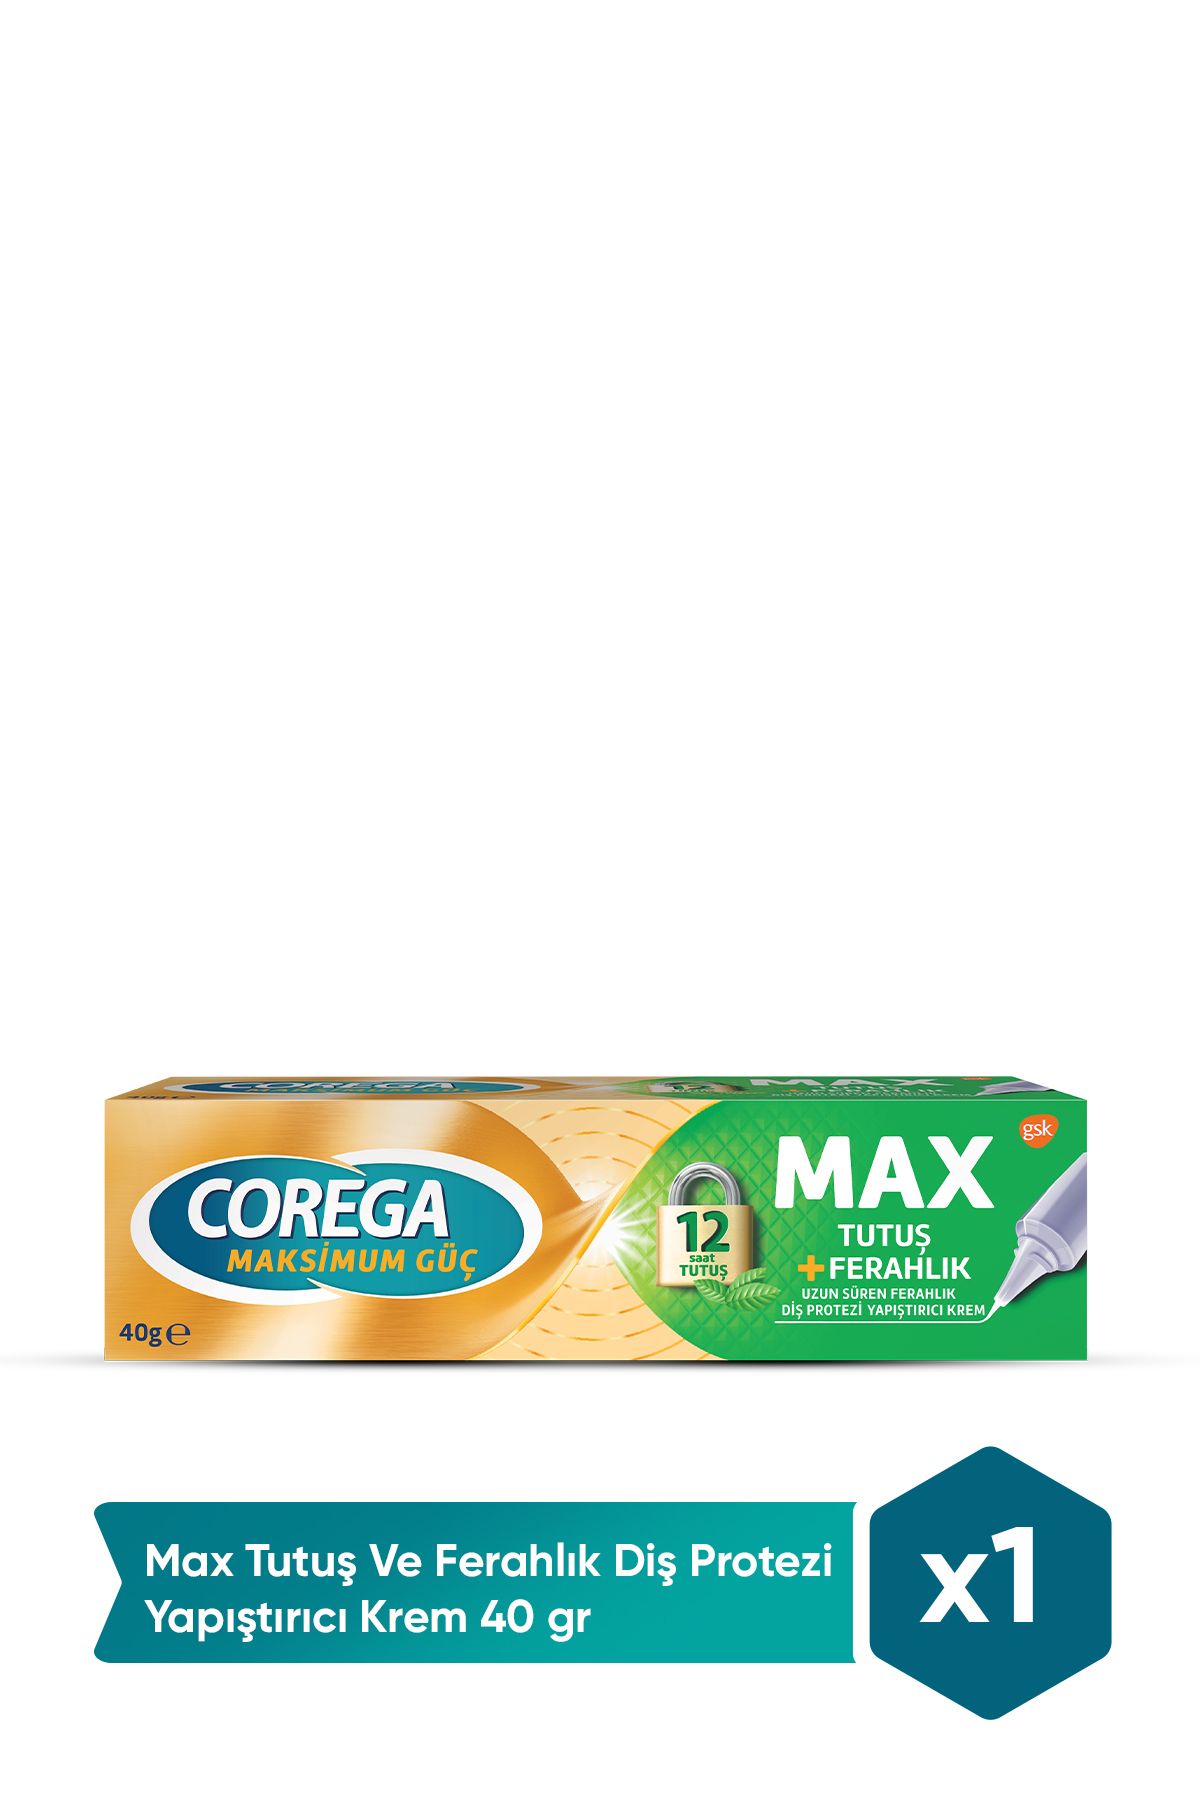 Corega Max Tutuş Ve Ferahlık Diş Protezi Yapıştırıcı Krem 40 gr